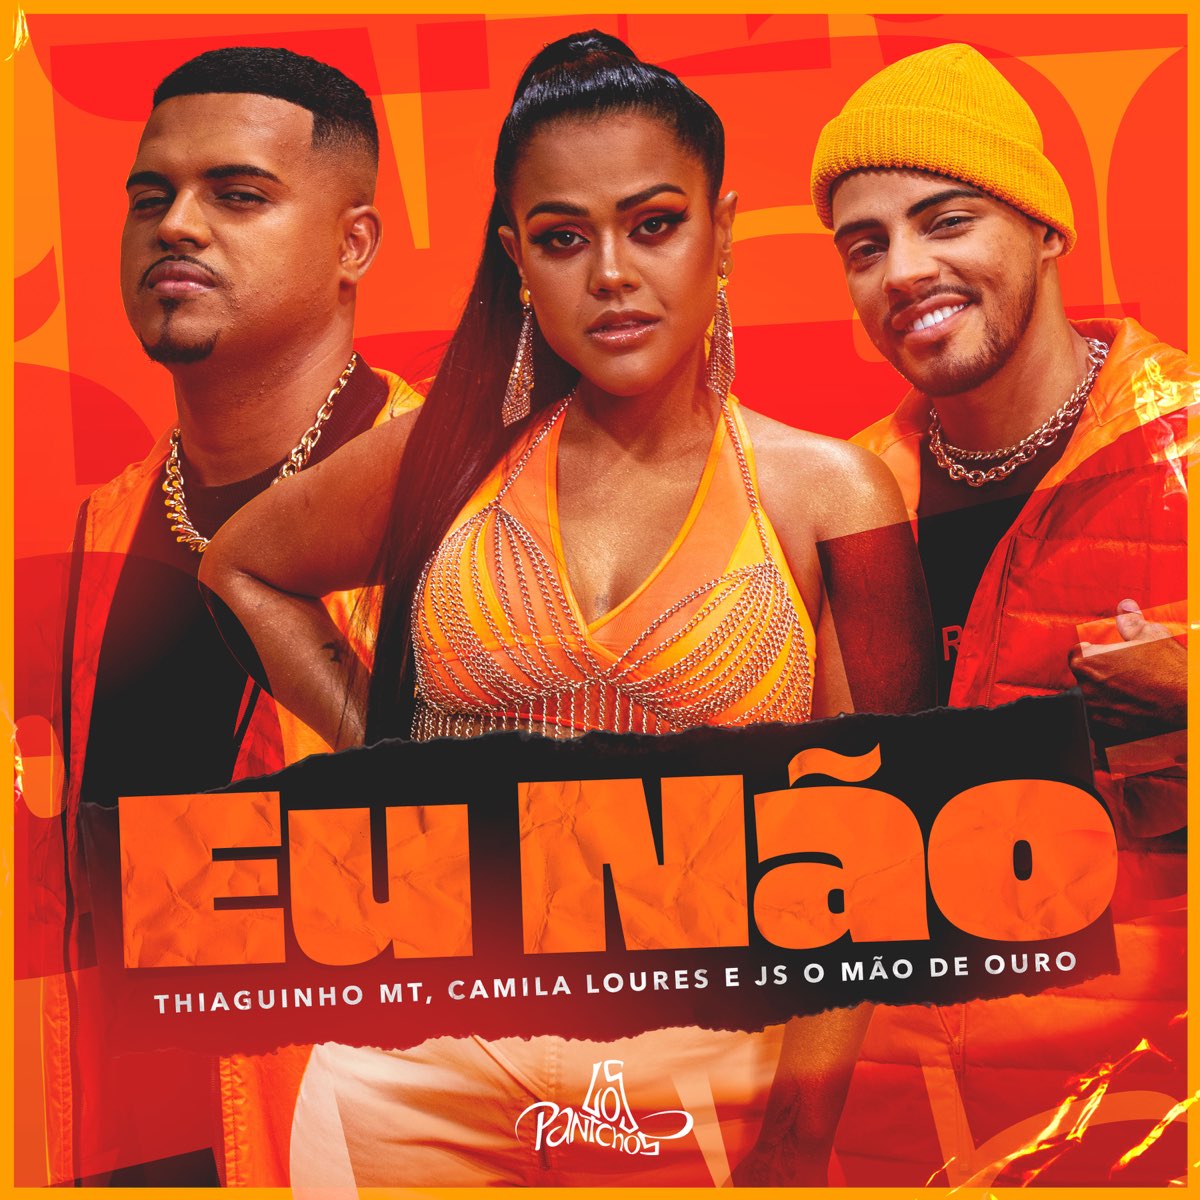 Camila Loures ft. featuring Thiaguinho MT & JS o Mão de Ouro Eu Não cover artwork